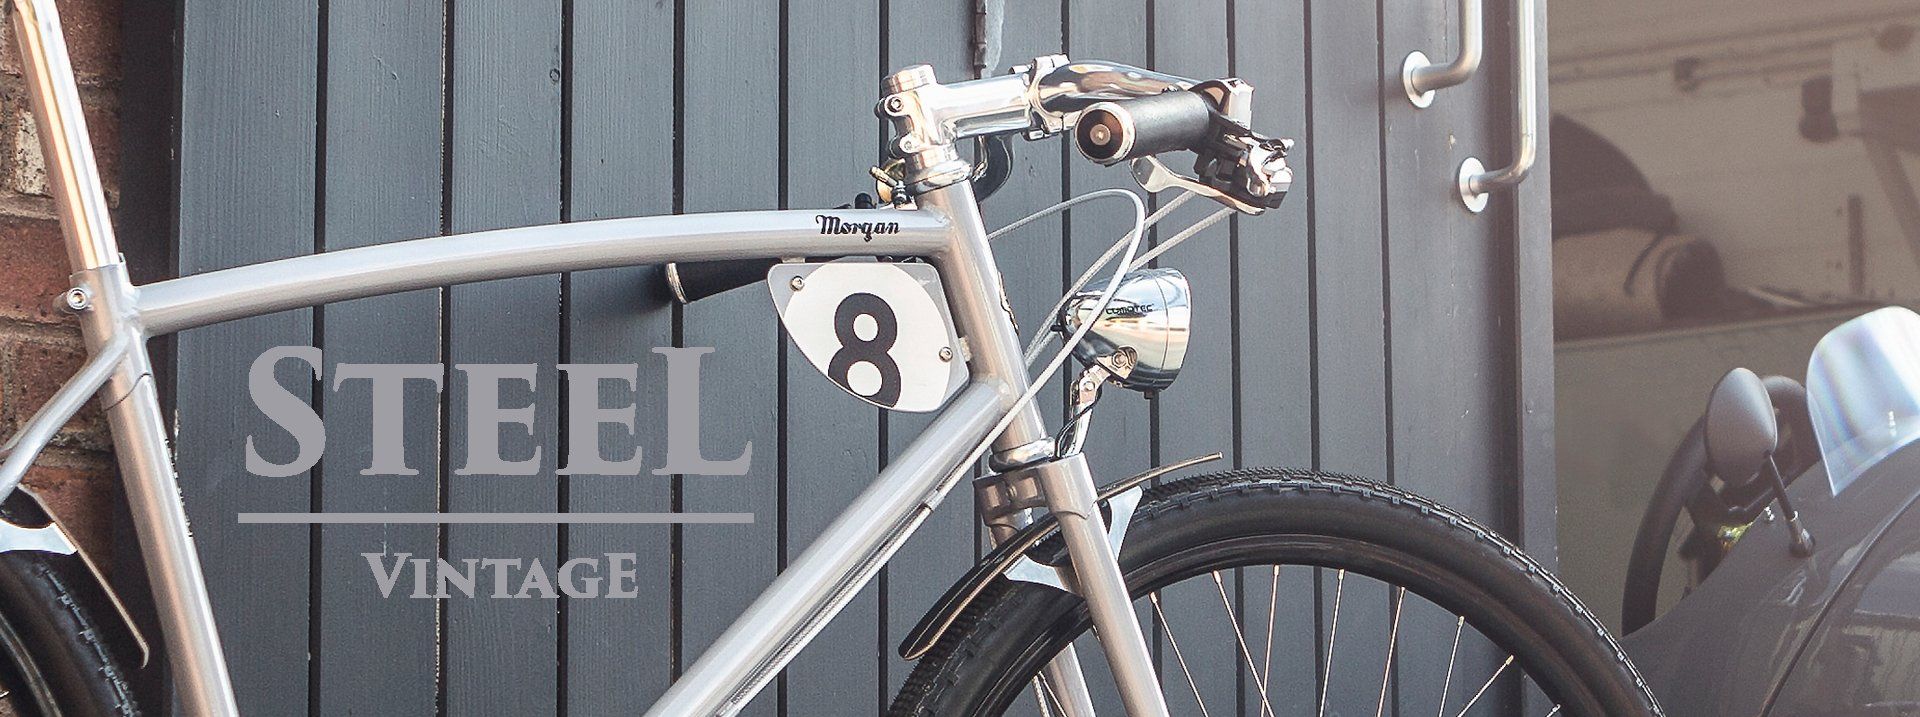 Steel Vintage Bikes bei Radleben in Soest und online unter radleben.com